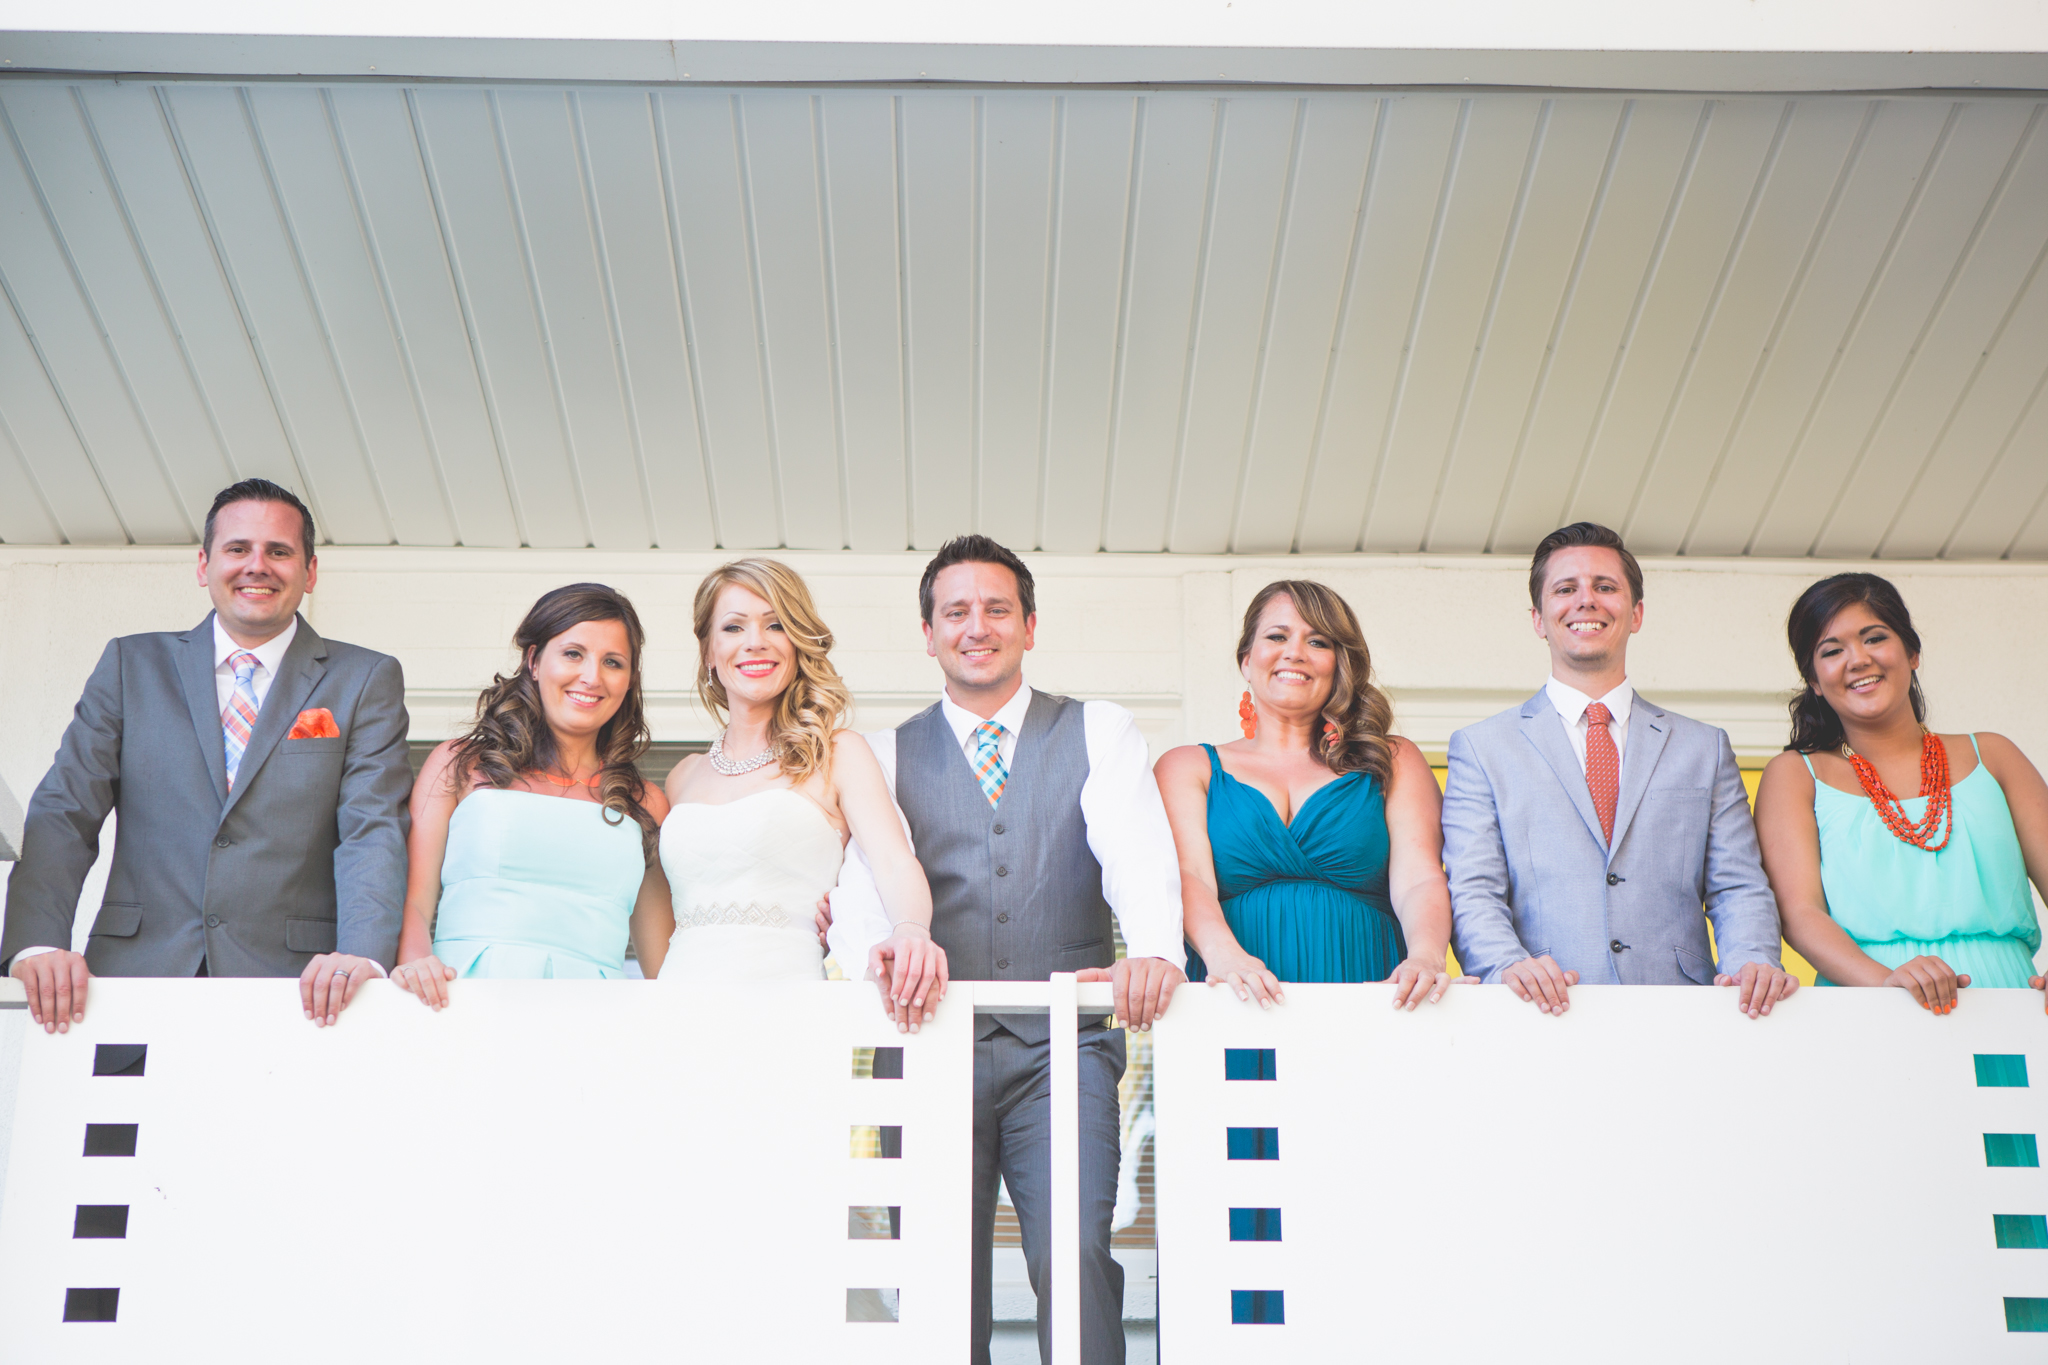 scottsdale-wedding-photographer-el-dorado-bride-groom-siblings-balcony